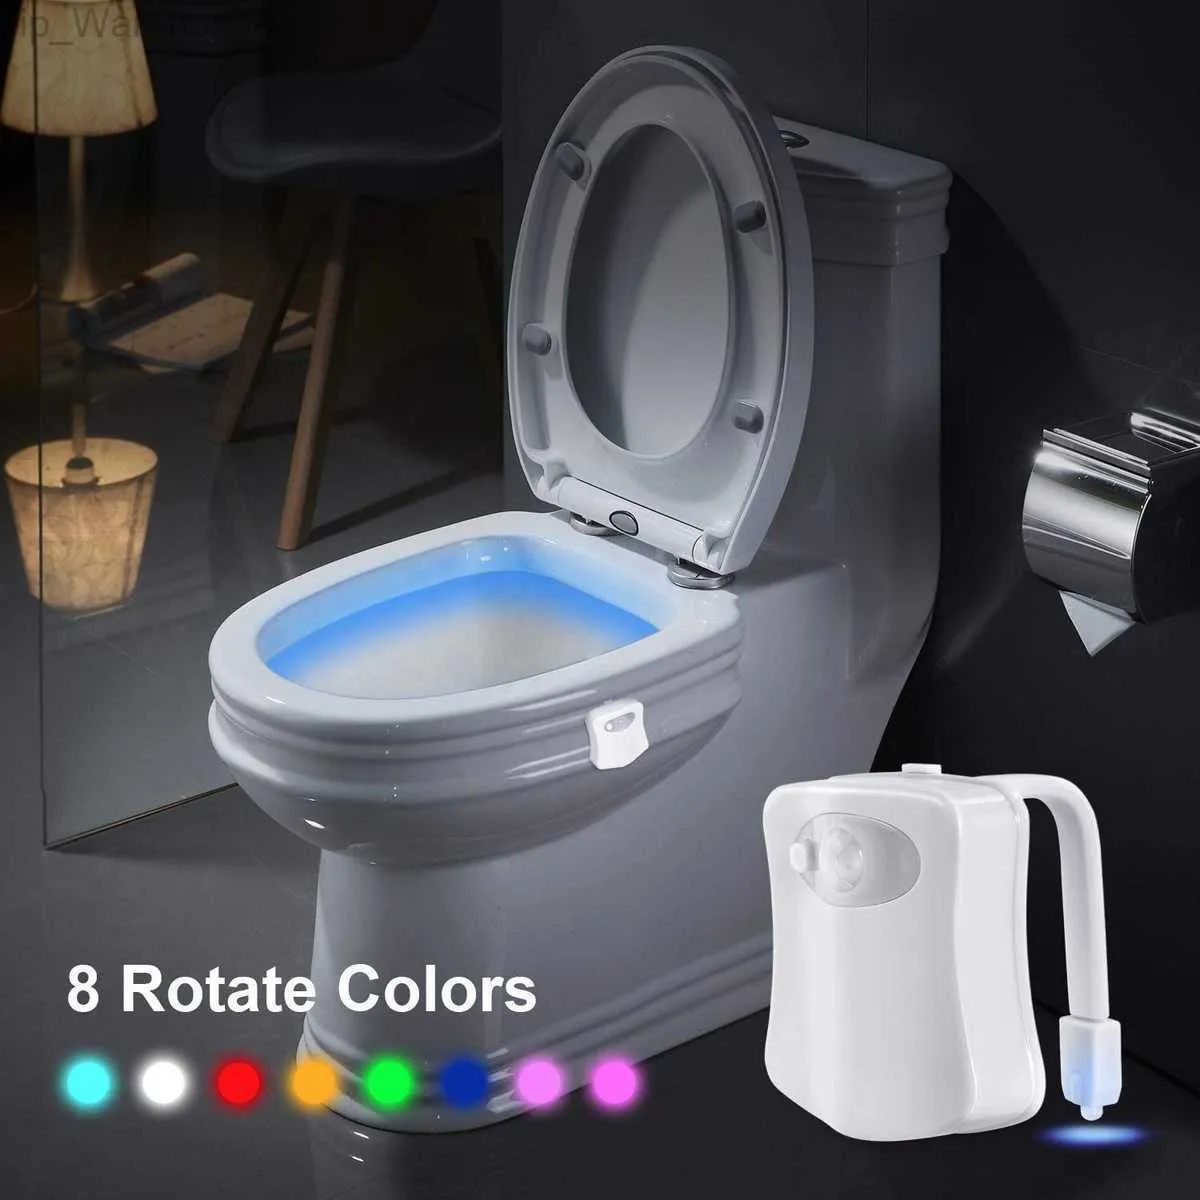 8 Farben Toilettenleuchte PIR Motion Sensor Toilette Nachtleuchte LED WASHROOM NACHT LAMPE TOMTORTEL LELLE FÜR DIE BADRAUT TOOL HKD230812